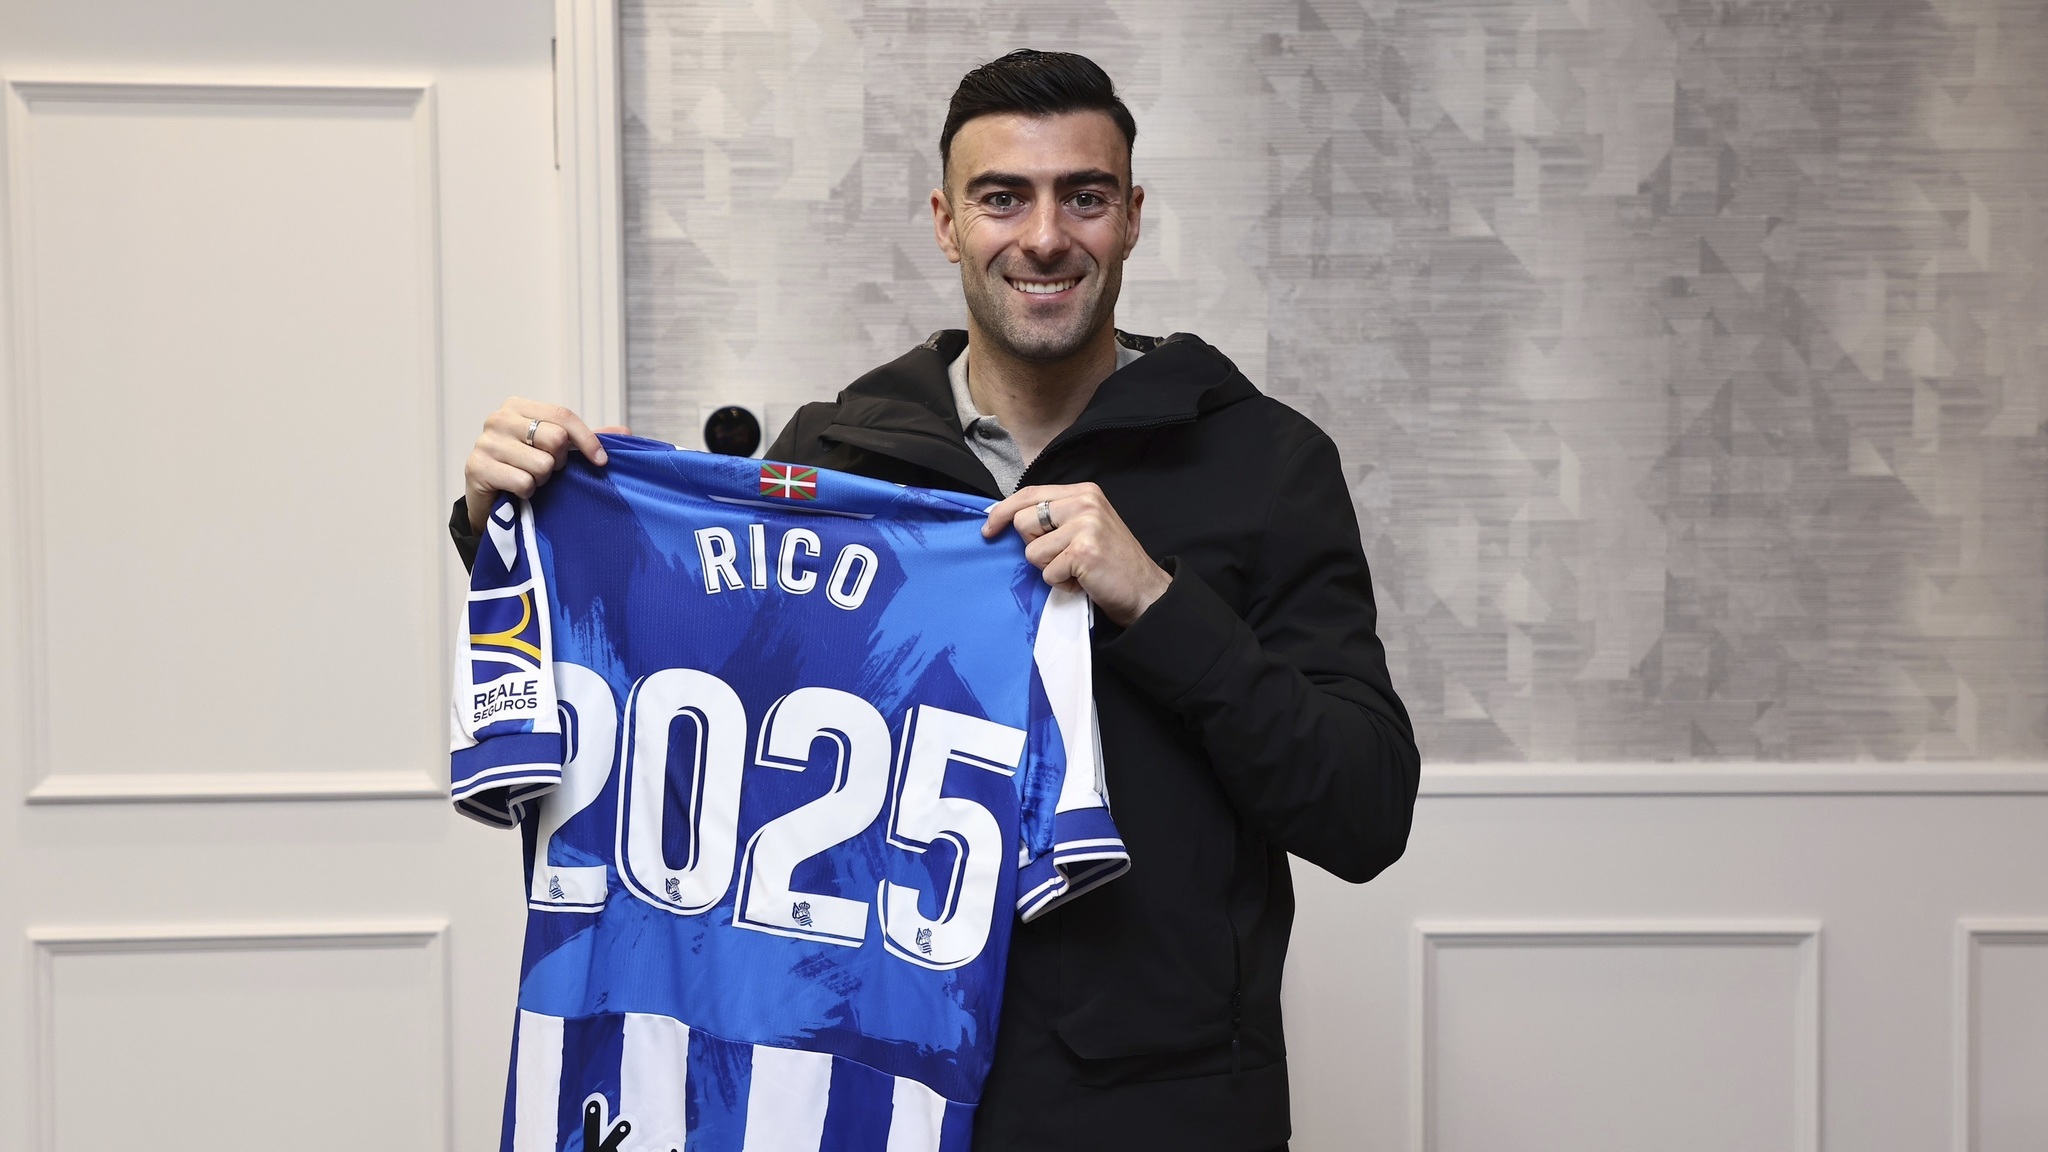 Diego Rico posa con la camiseta especial por su renovación.